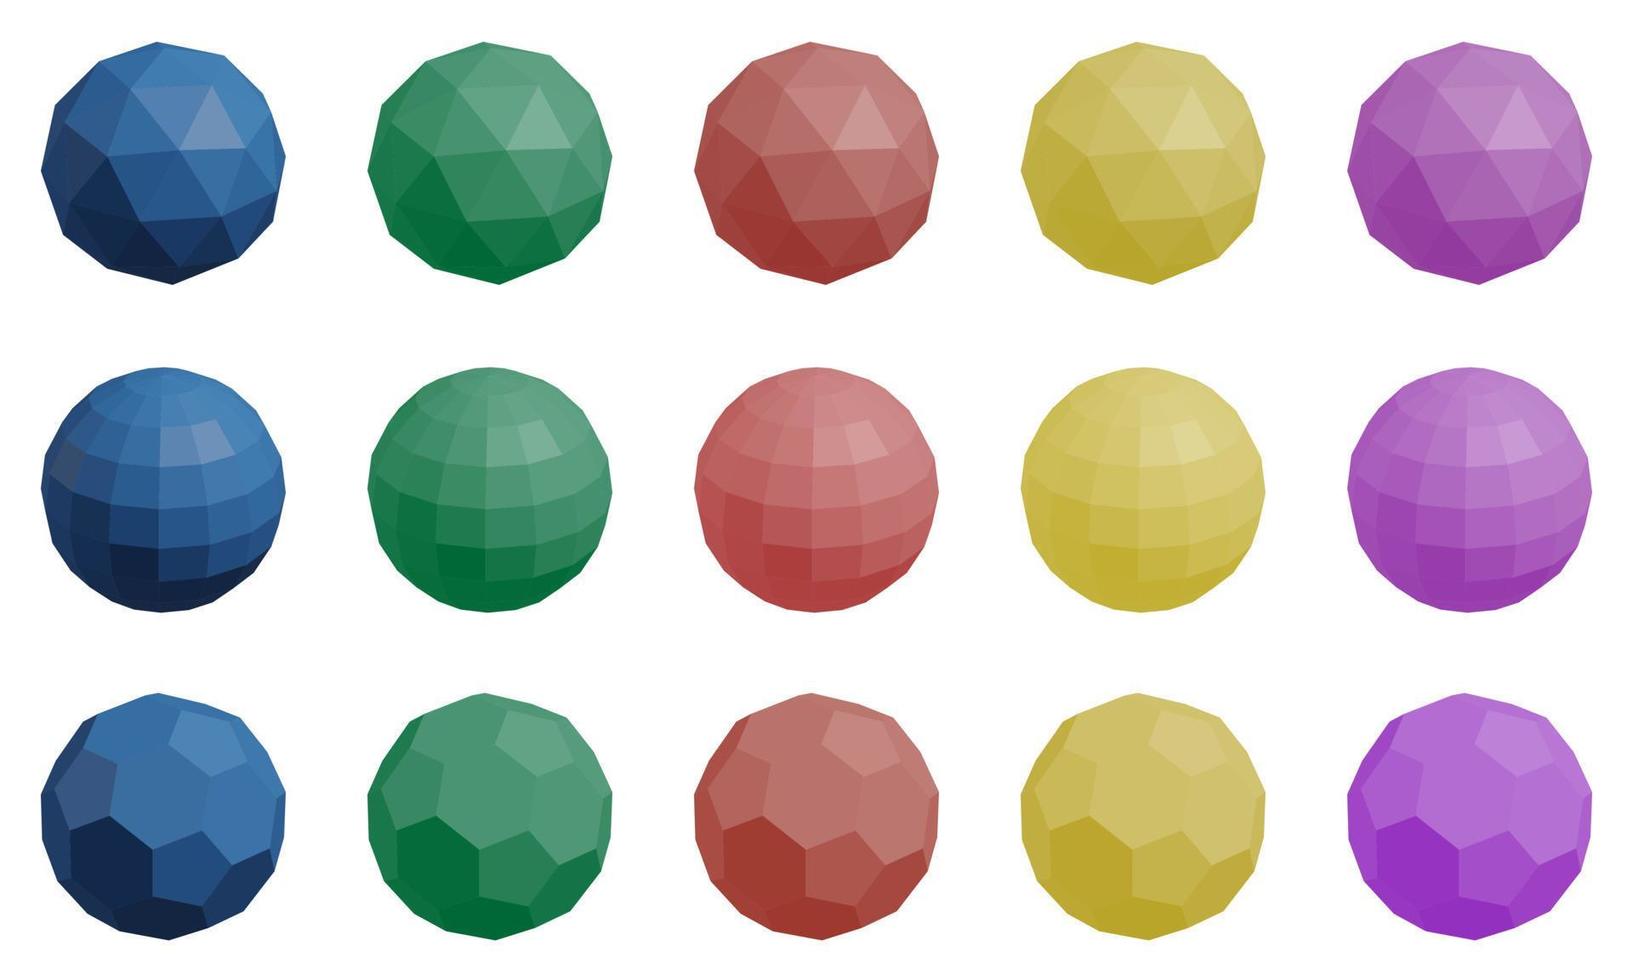 set van 15 kleurrijke low-poly primitieven geïsoleerd op een witte achtergrond. vector icosaëder, dodecaëder en voetbal ballen vormen van vijfhoeken en zeshoeken.